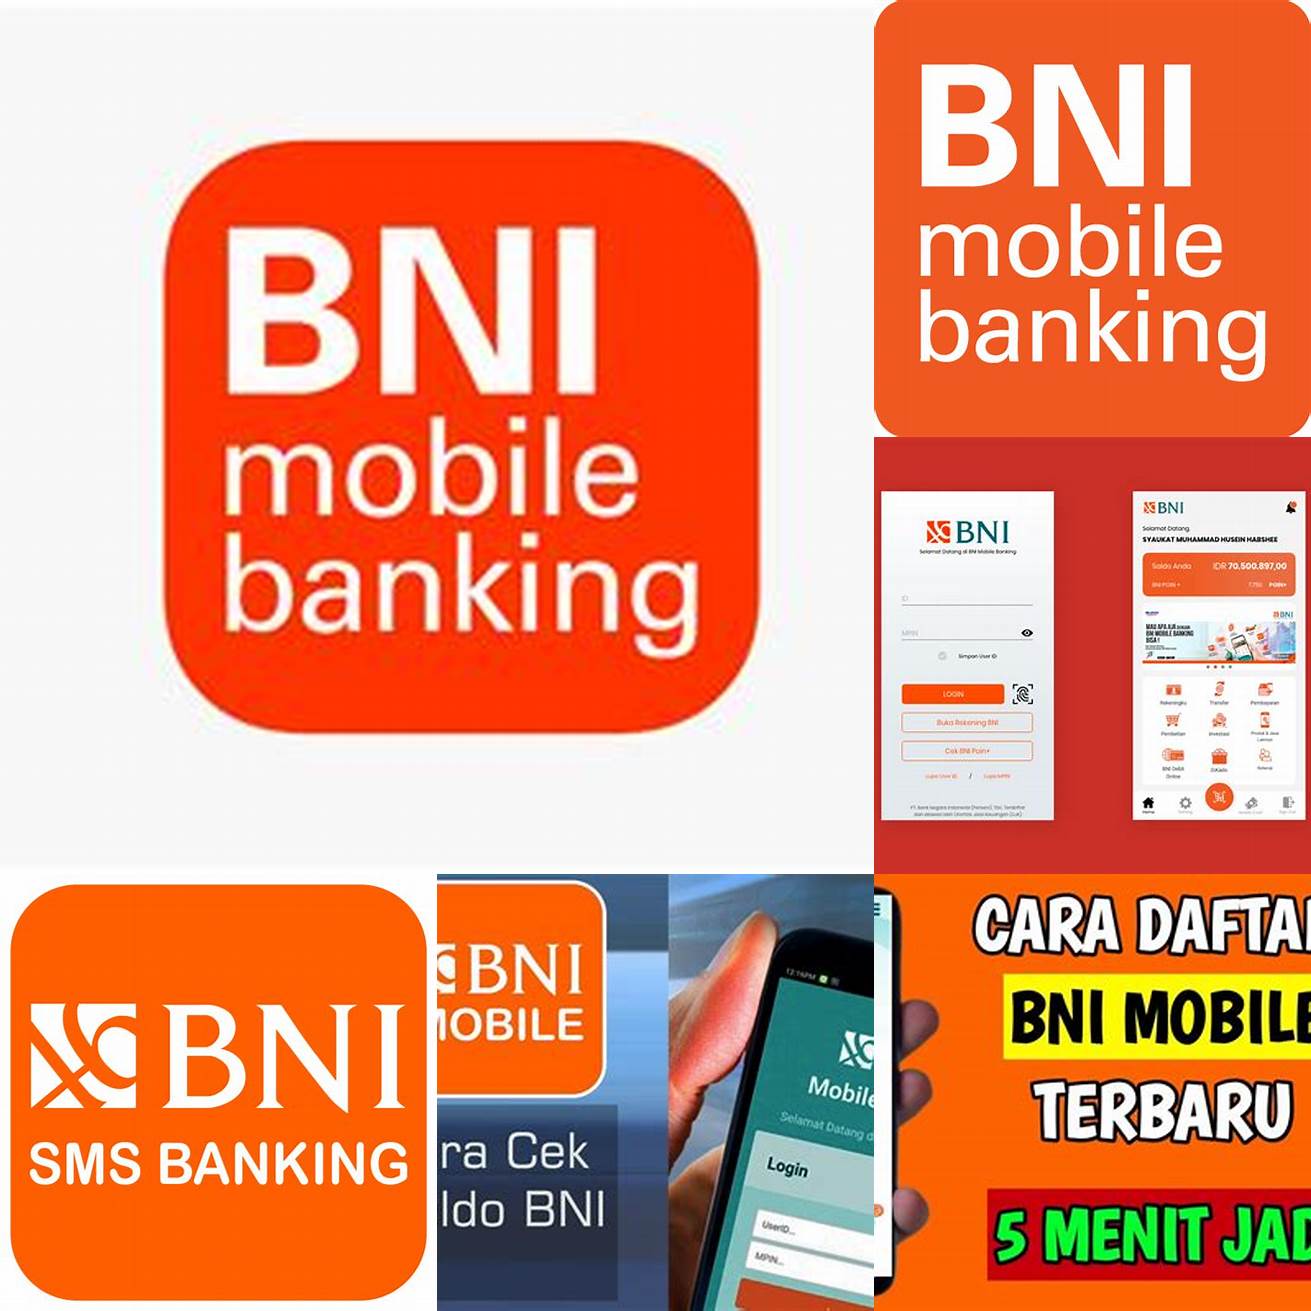 Unduh aplikasi BNI Mobile di App Store atau Google Play Store